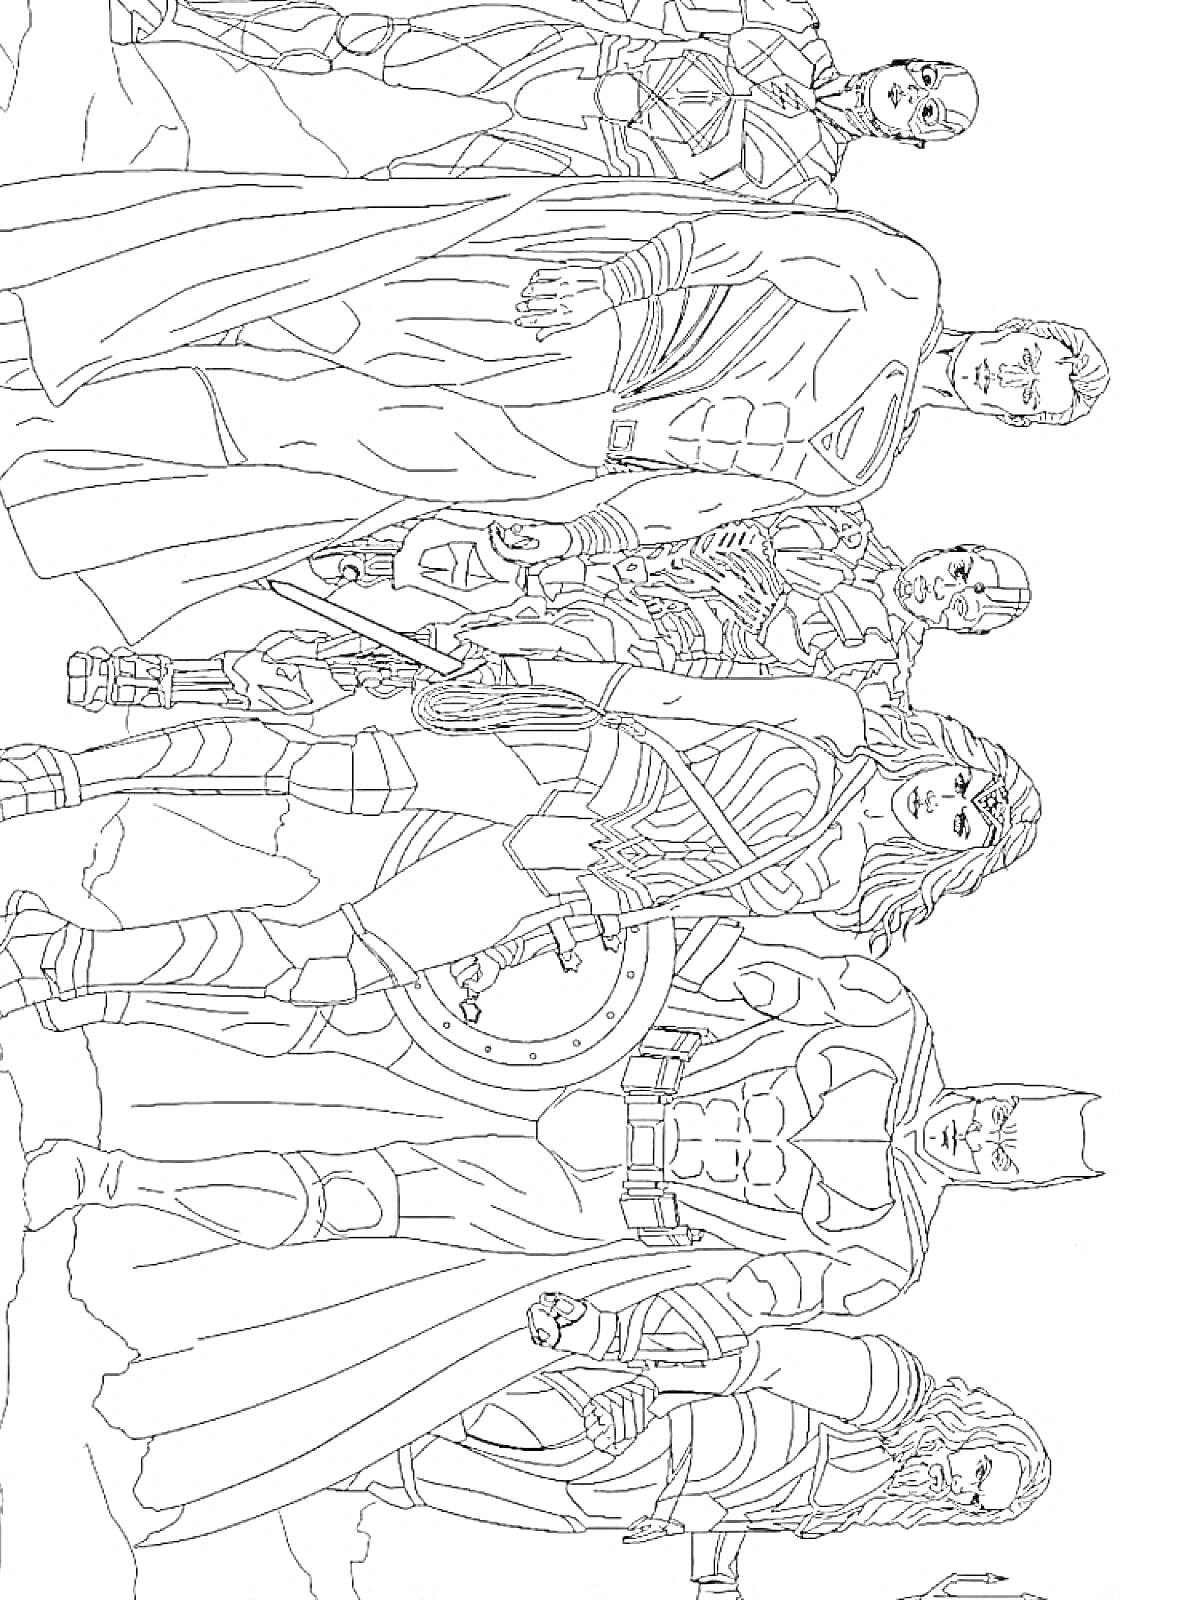 Раскраска Лига Справедливости - команда героев в полном составе (Супермен, Бэтмен, Чудо-женщина, Аквамен, Флэш, Киборг)